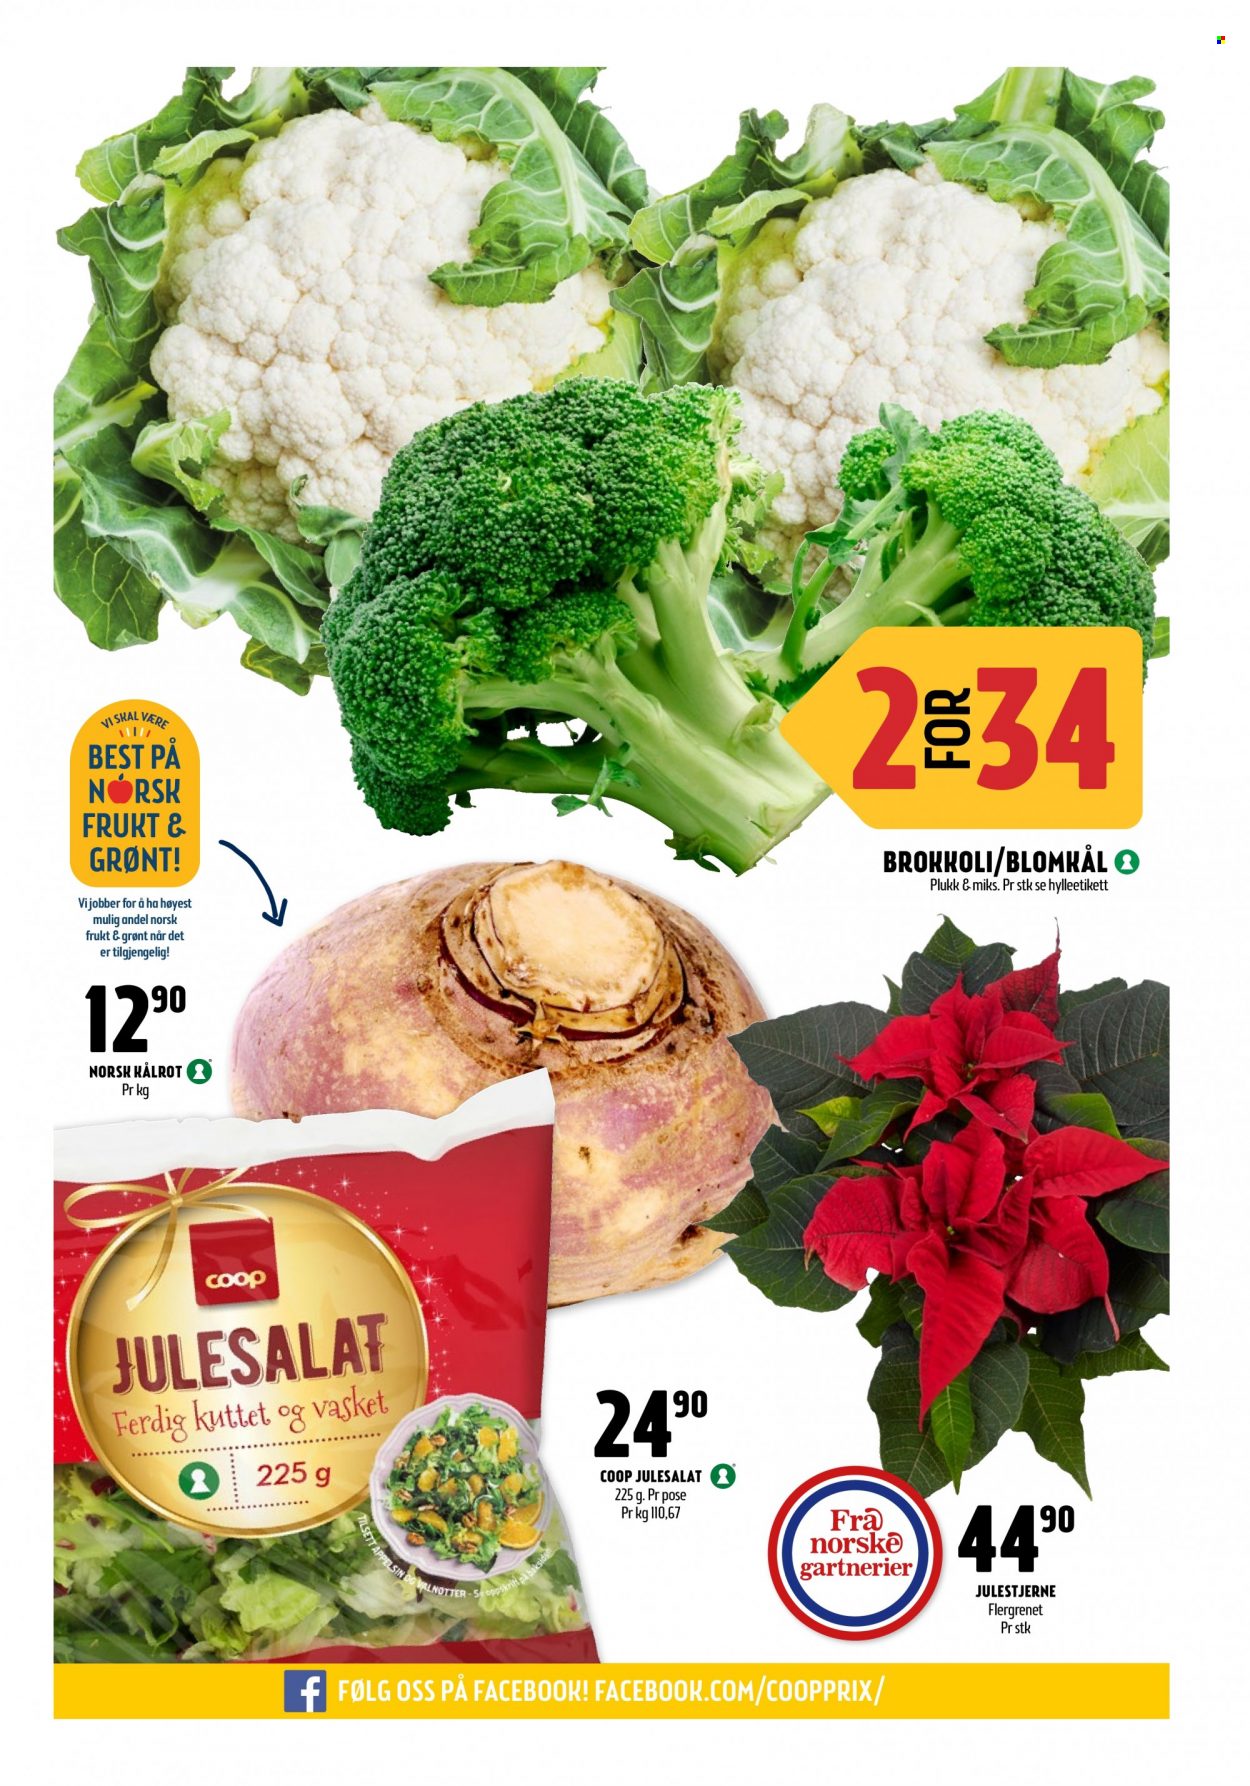 thumbnail - Kundeavis Coop Prix - 29.11.2021 - 12.12.2021 - Produkter fra tilbudsaviser - blomkål, brokkoli, kålrot. Side 3.